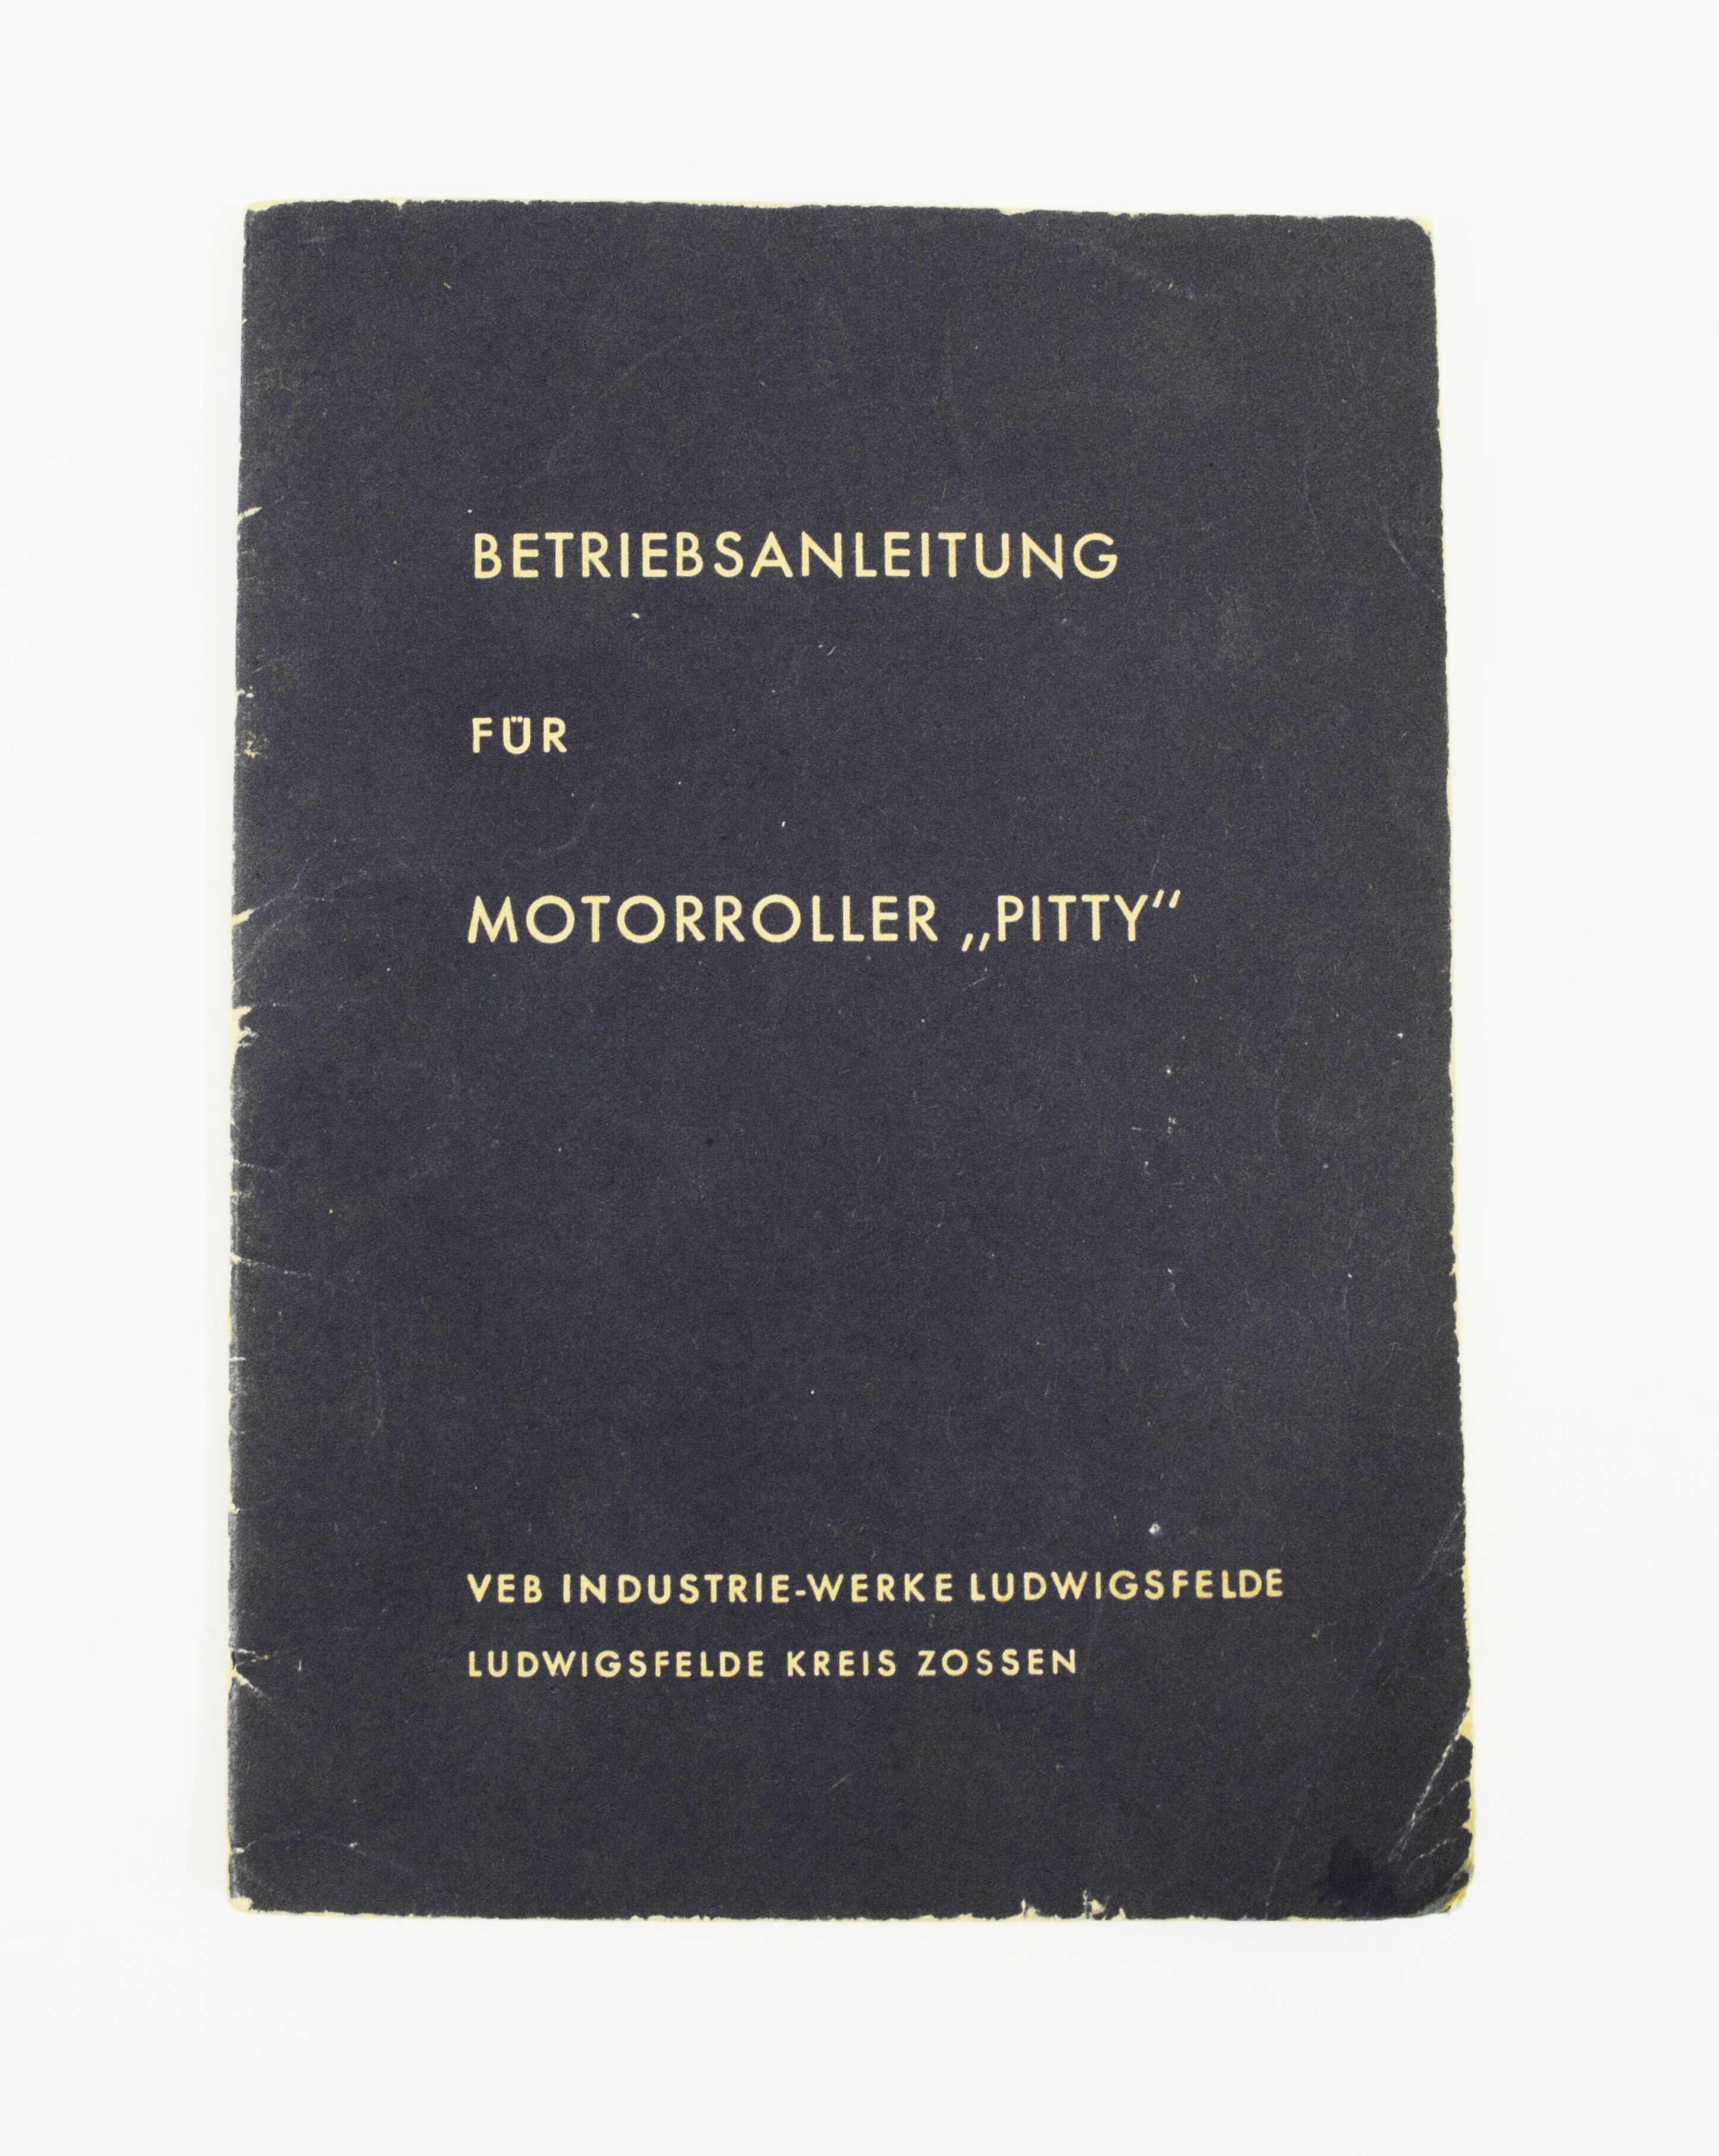 Betriebsanleitung für Motorroller "Pitty" (Stadt- und Technikmuseum Ludwigsfelde CC BY-NC-SA)